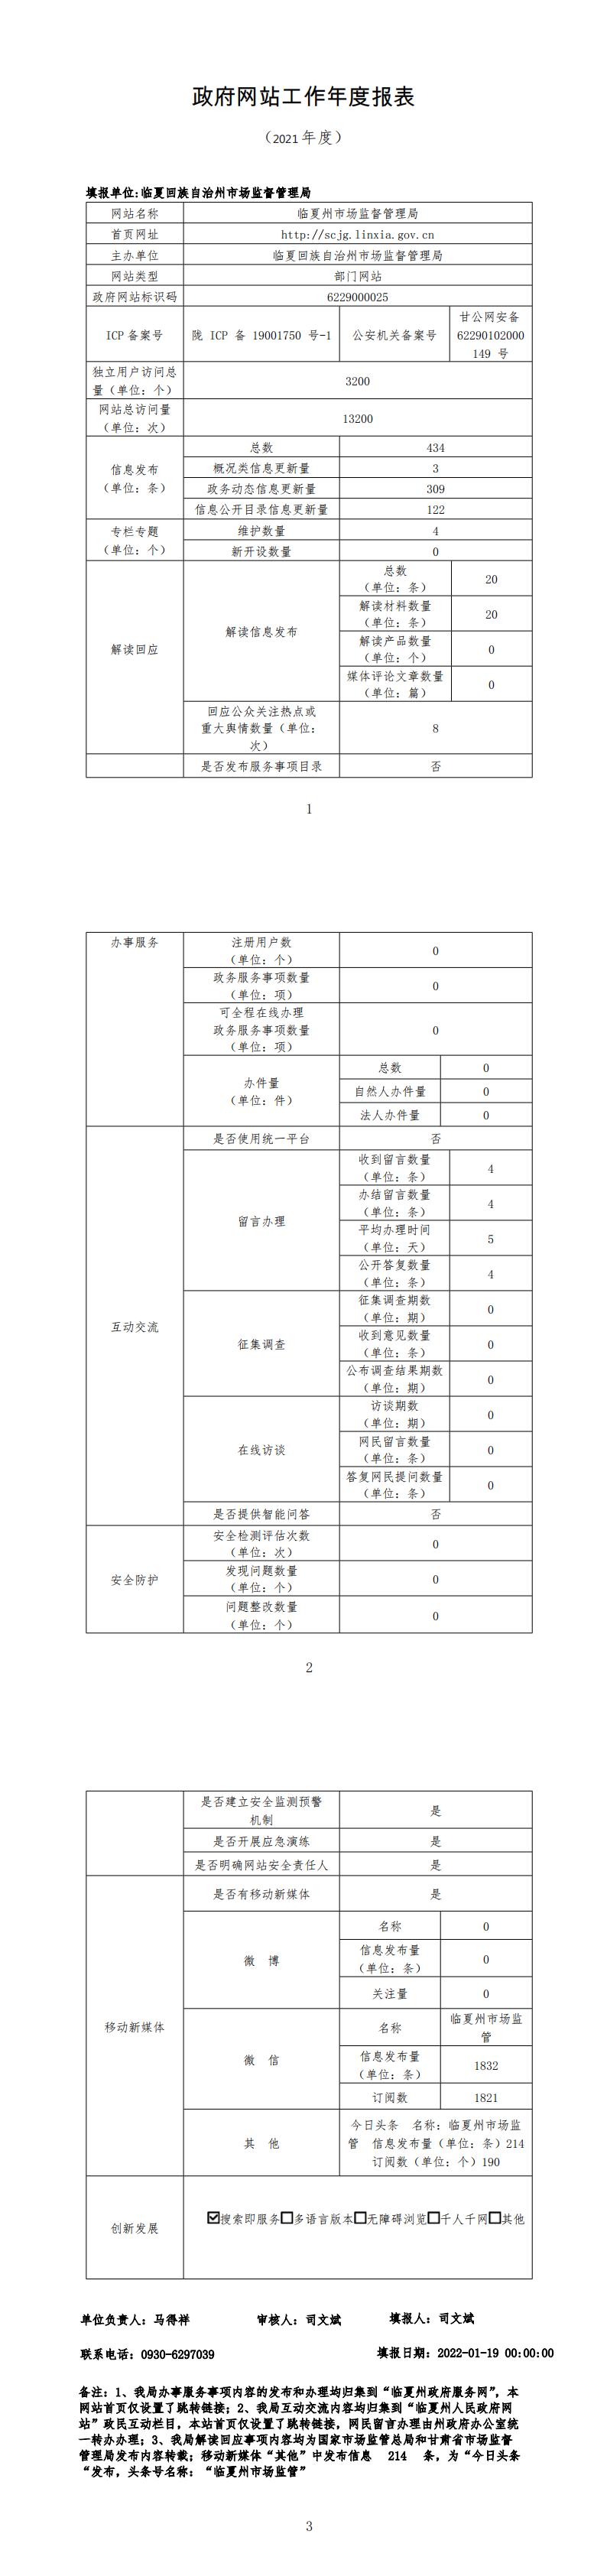 临夏州市场监督管理局2021年度政府网站年度工作报表_00.jpg